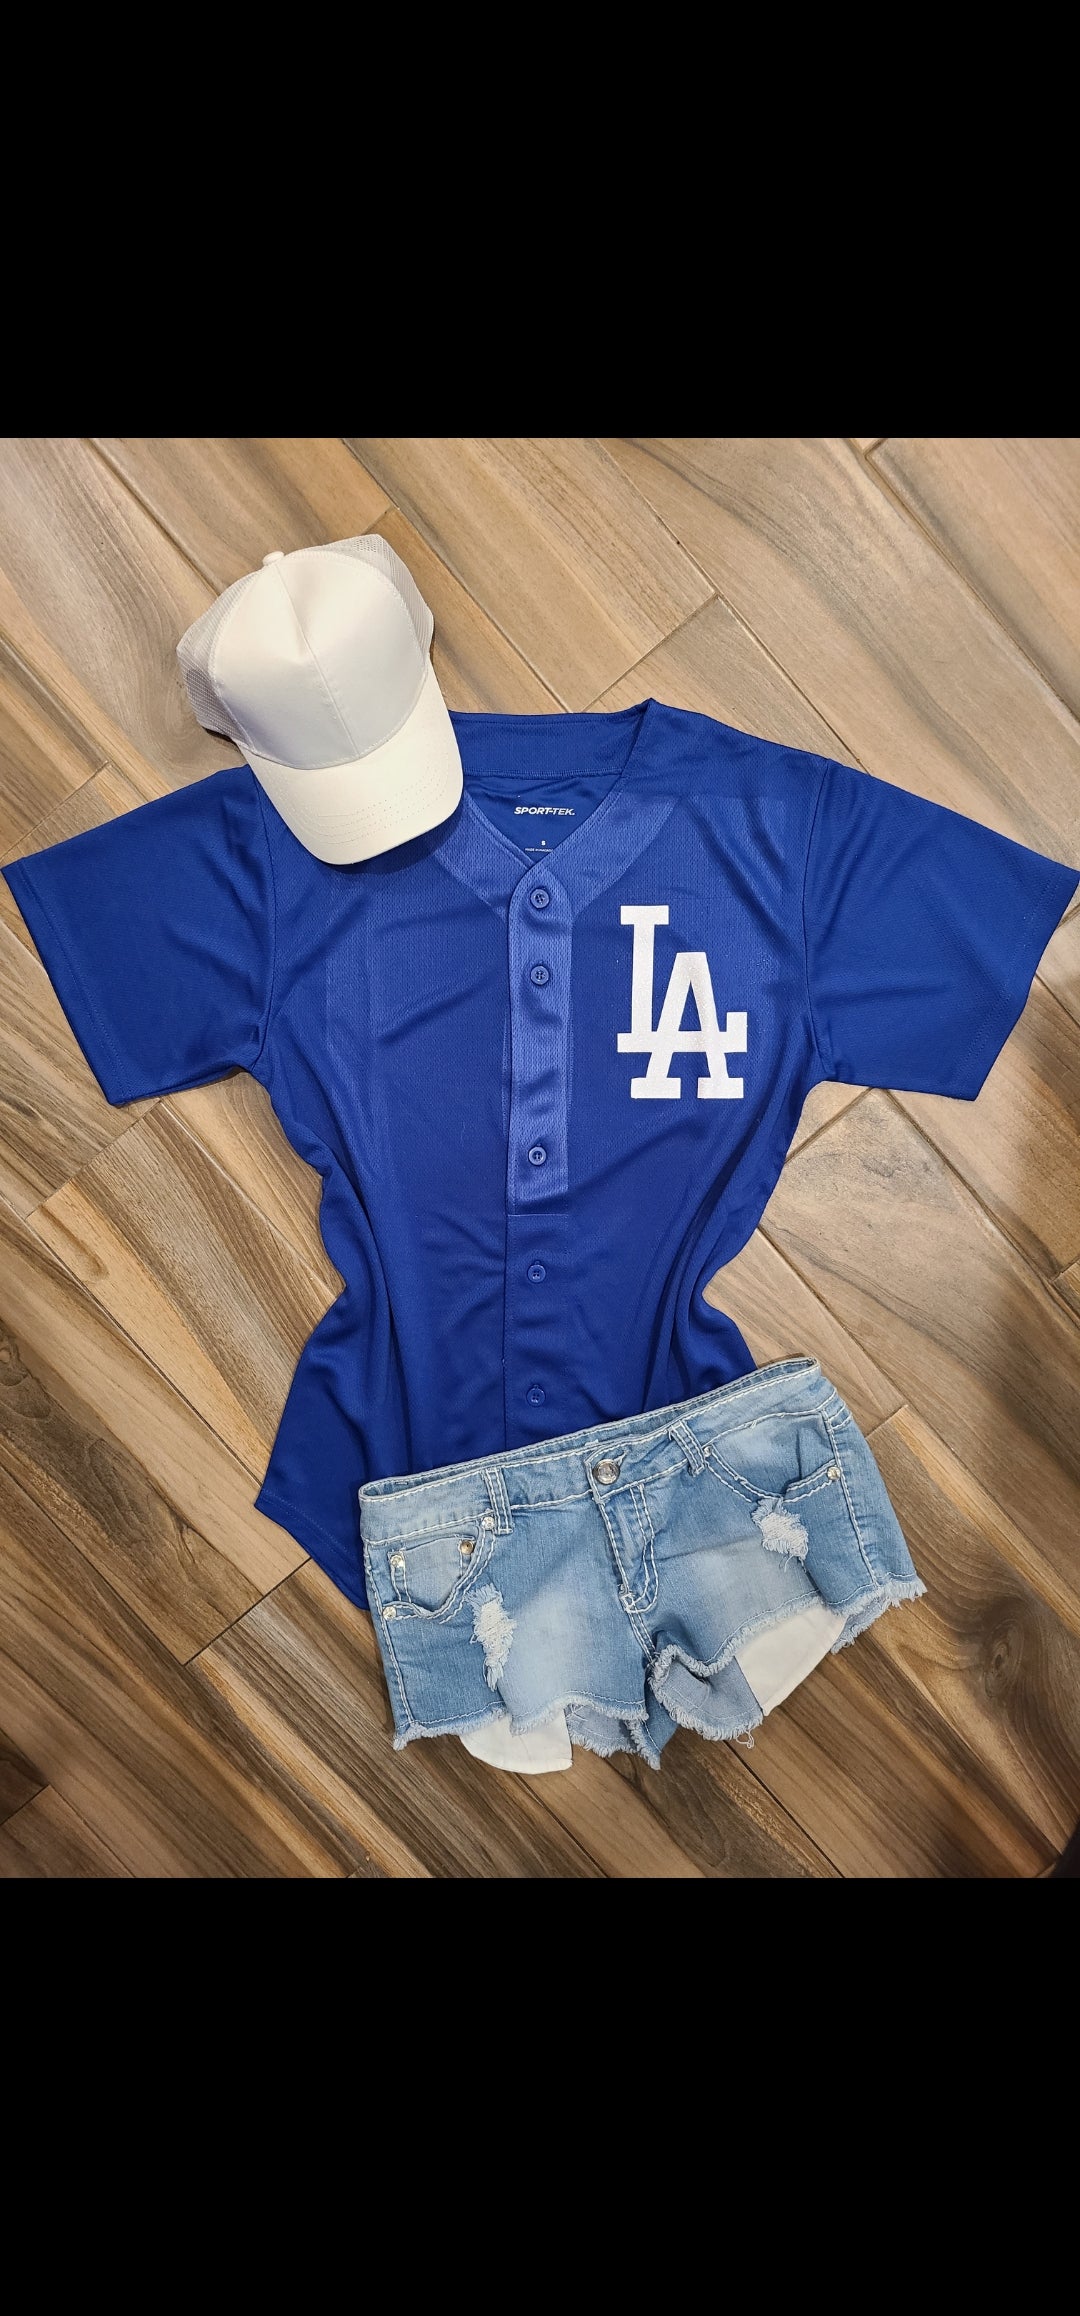 Glitter Glam Spirit Wear, Baseball & Football Jerseys, Apparel, Shoes,  Accessories & More - Lulu Grace Designs – Tagged LA Dodgers Jersey – LuLu  Grace